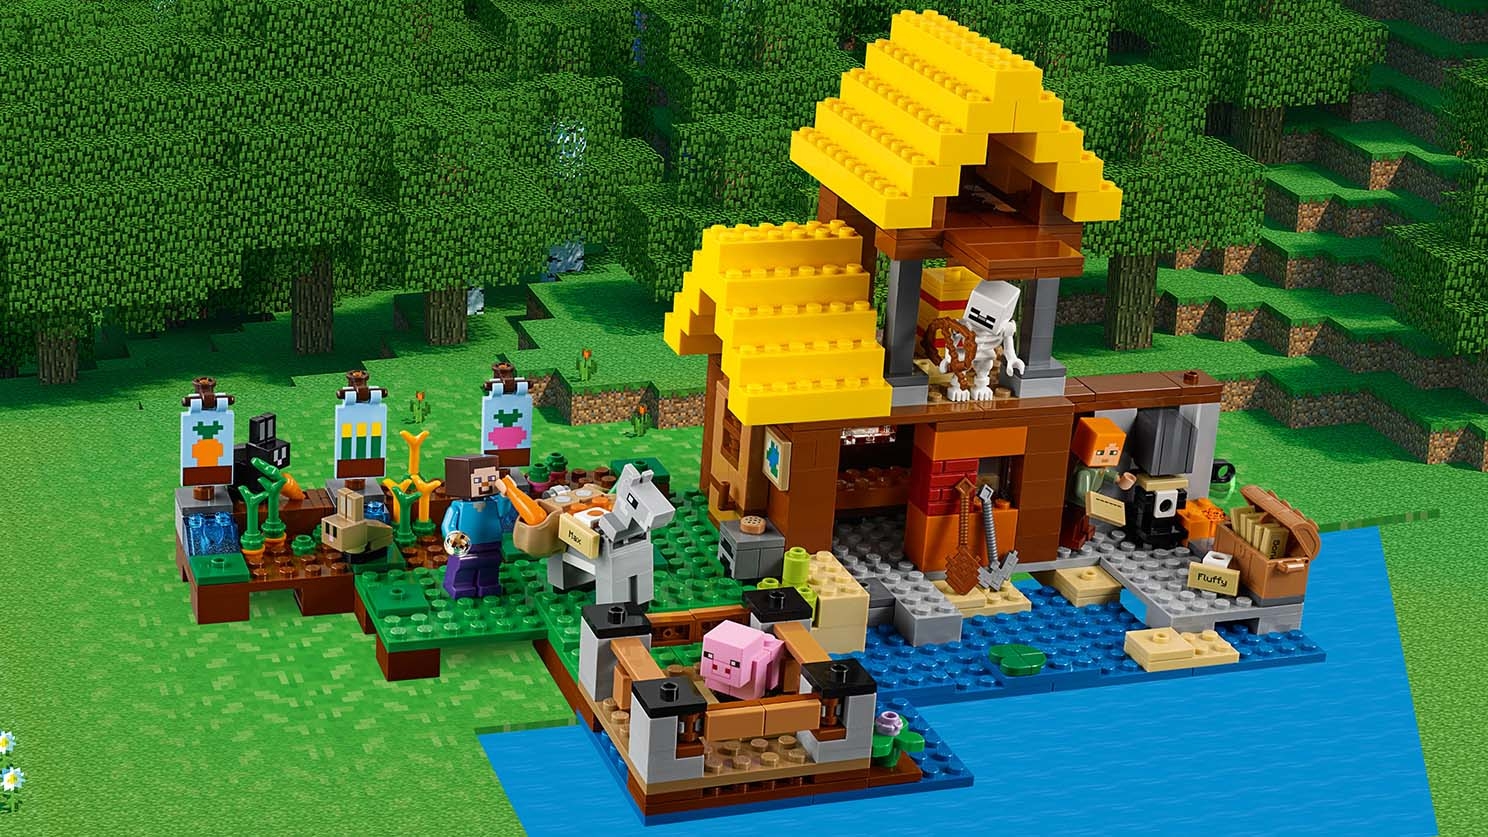 畑のコテージ 21144 - レゴ®マインクラフト セット - LEGO.comキッズ